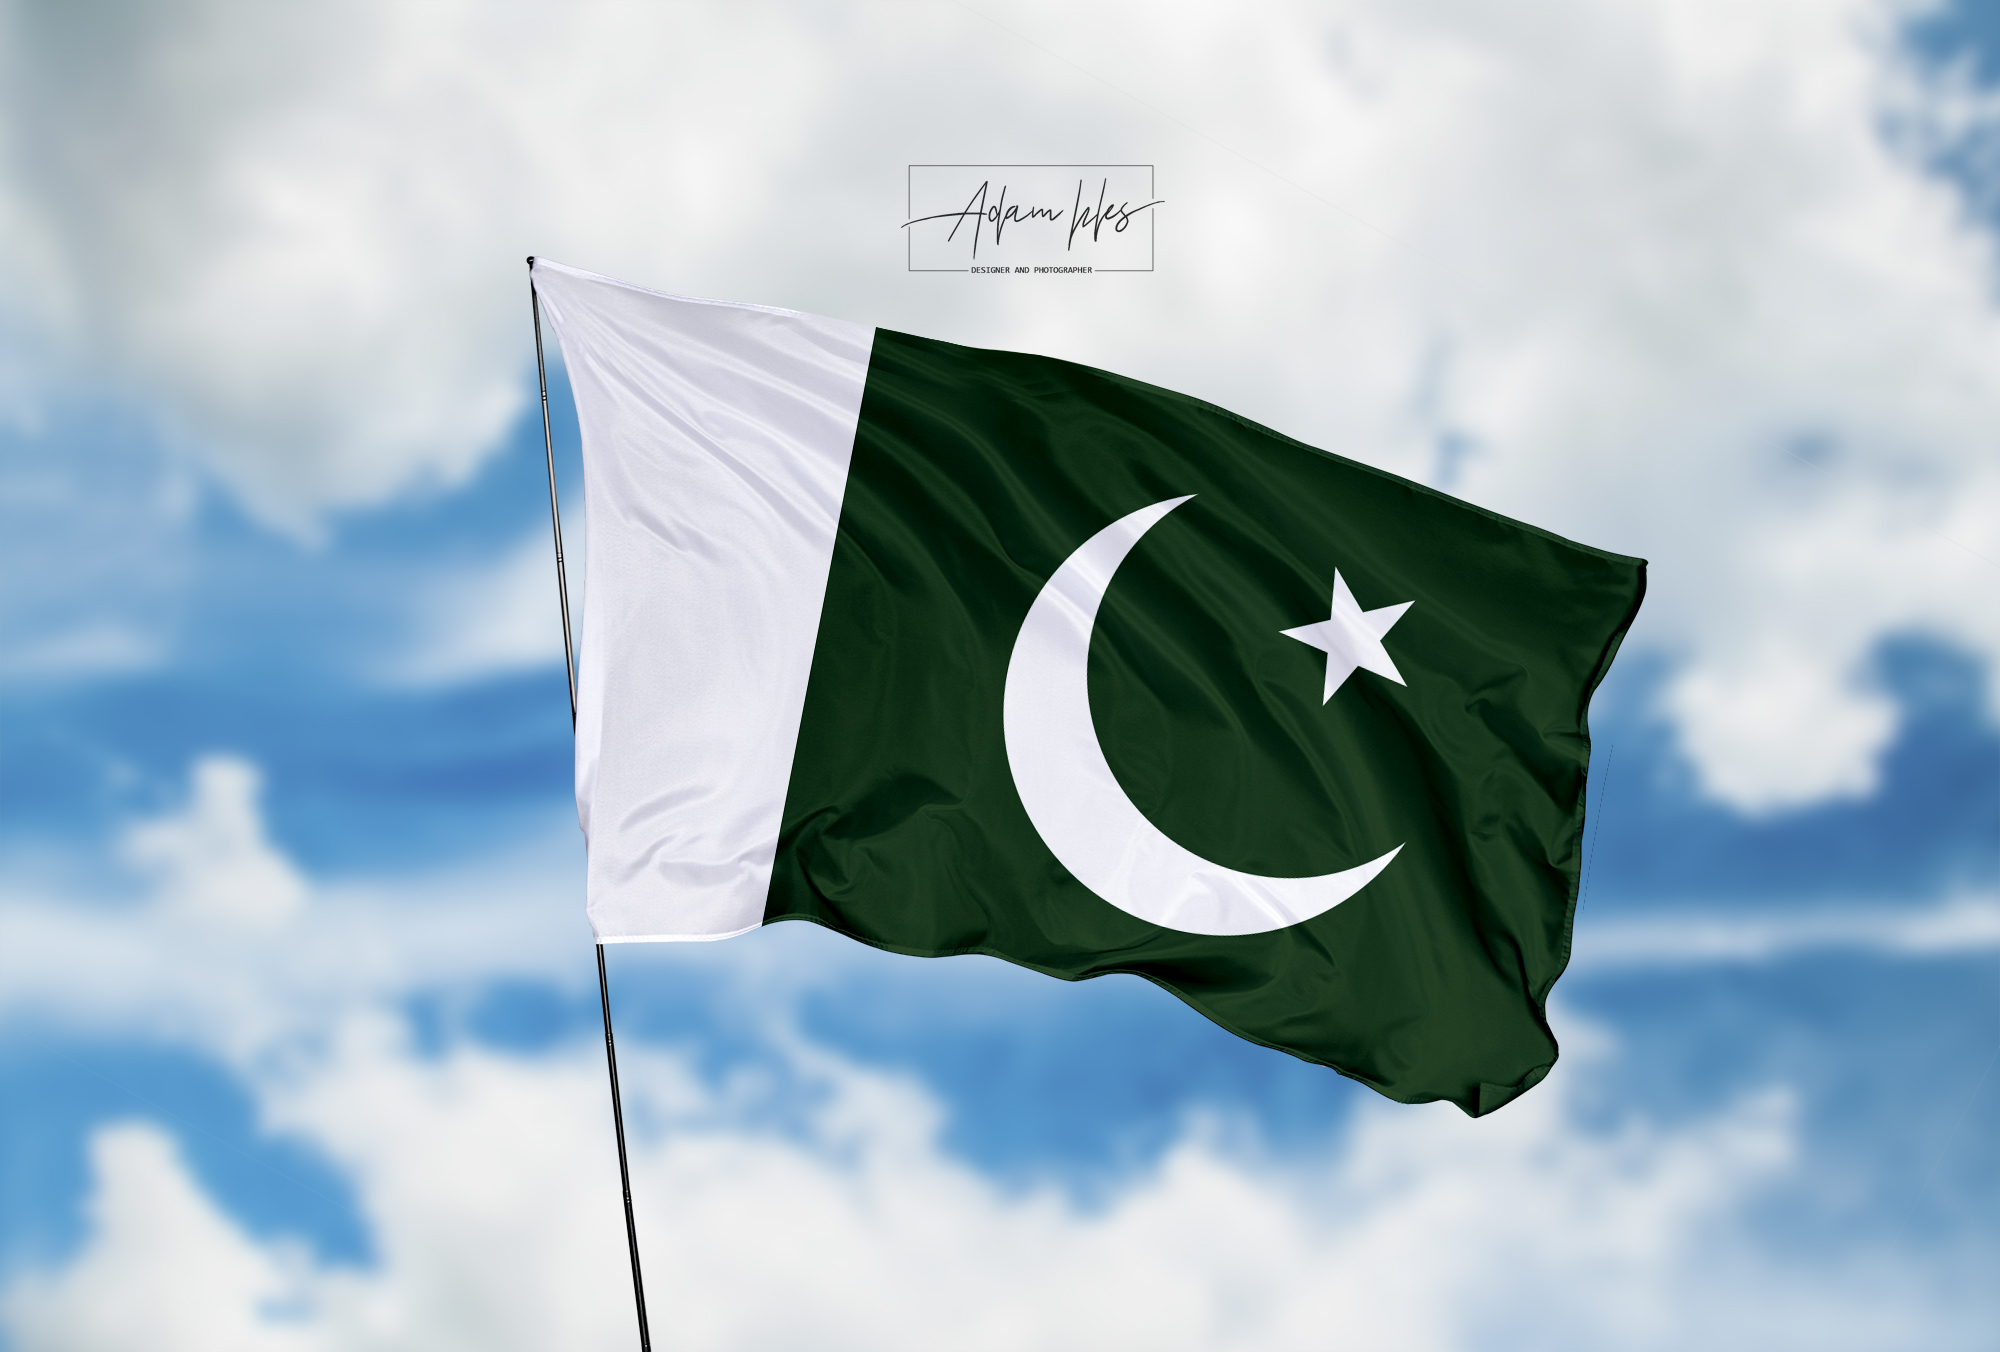 تحميل اجمل خلفية علم باكستان يرفرف في السماء - اجمل خلفيات باكستان الرائعة